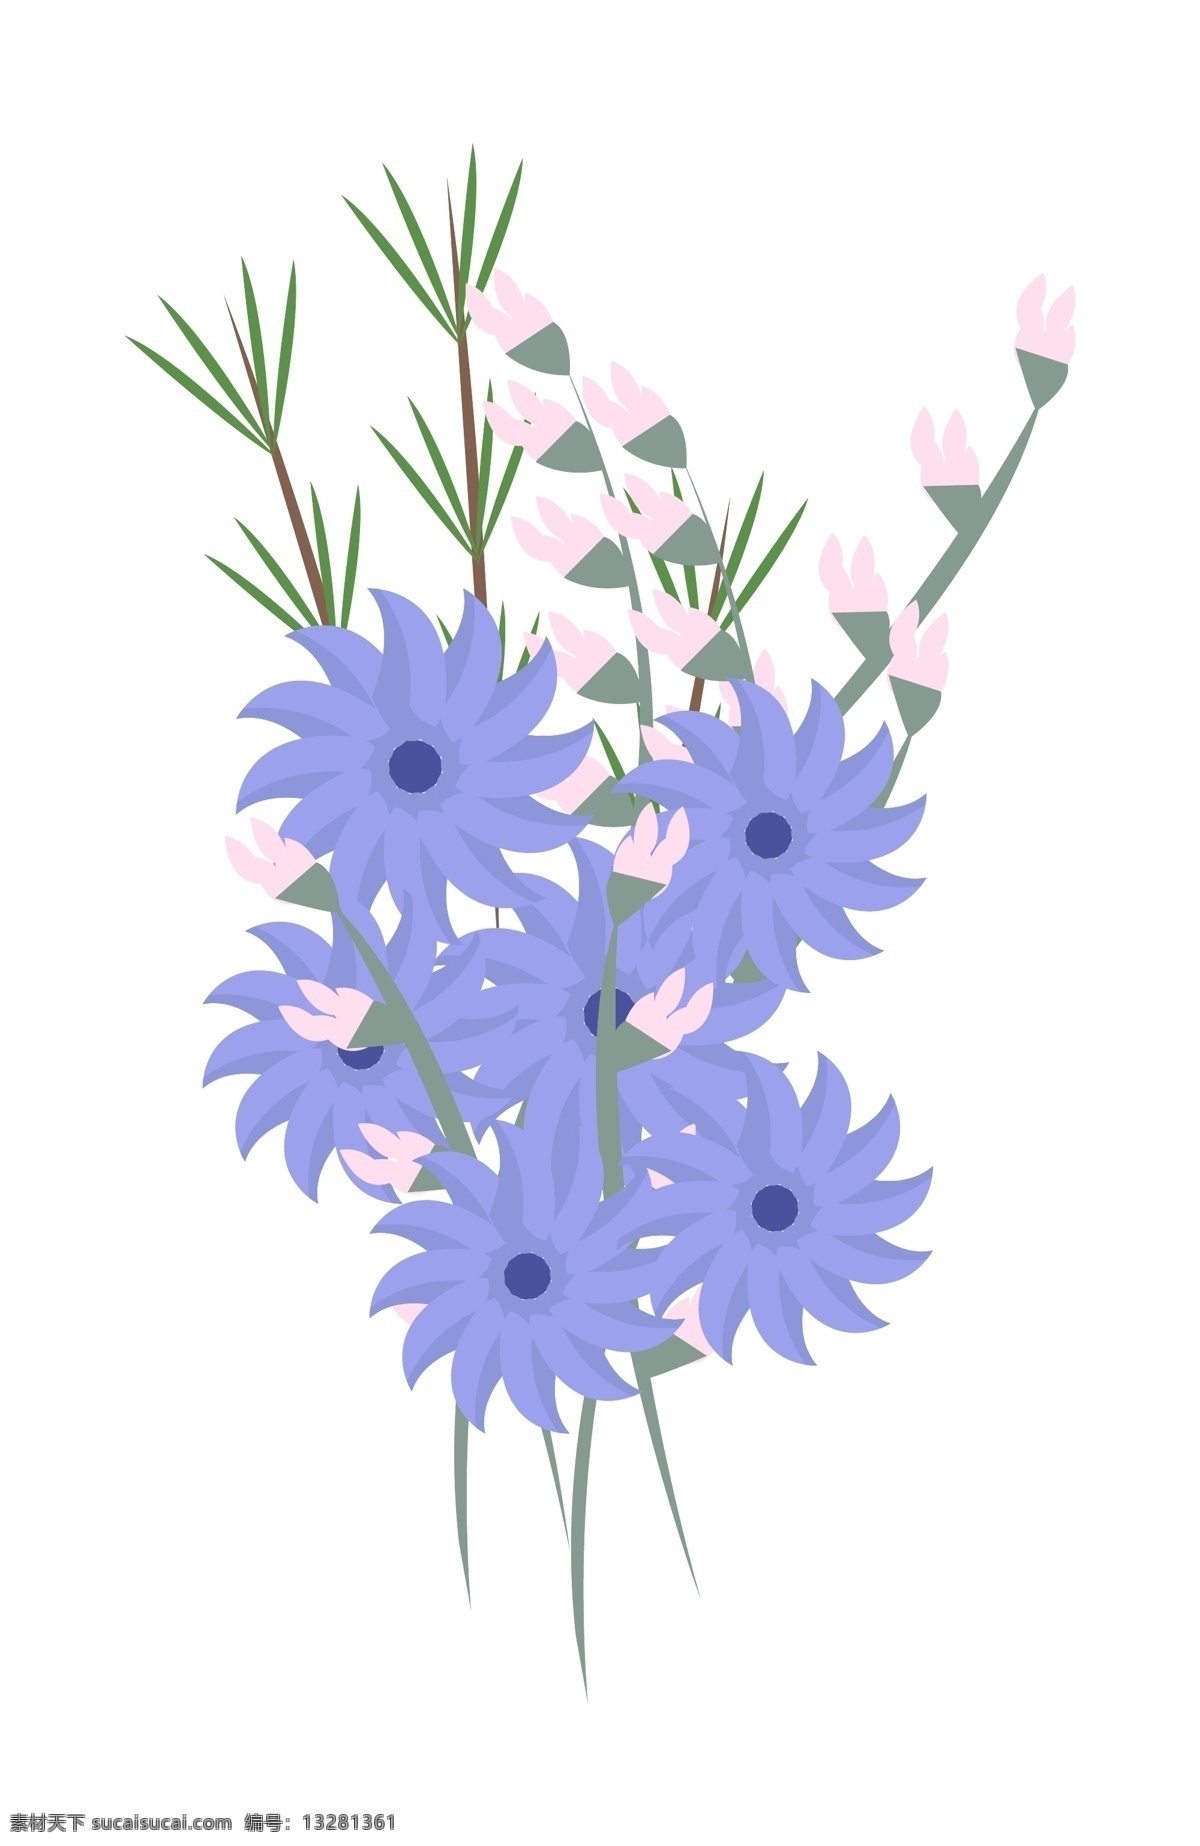 蓝色 手绘 风 花束 创意 彩色 植物 爱情 彩色植物花束 卡通插画 手绘花束 蓝色花束 手绘风